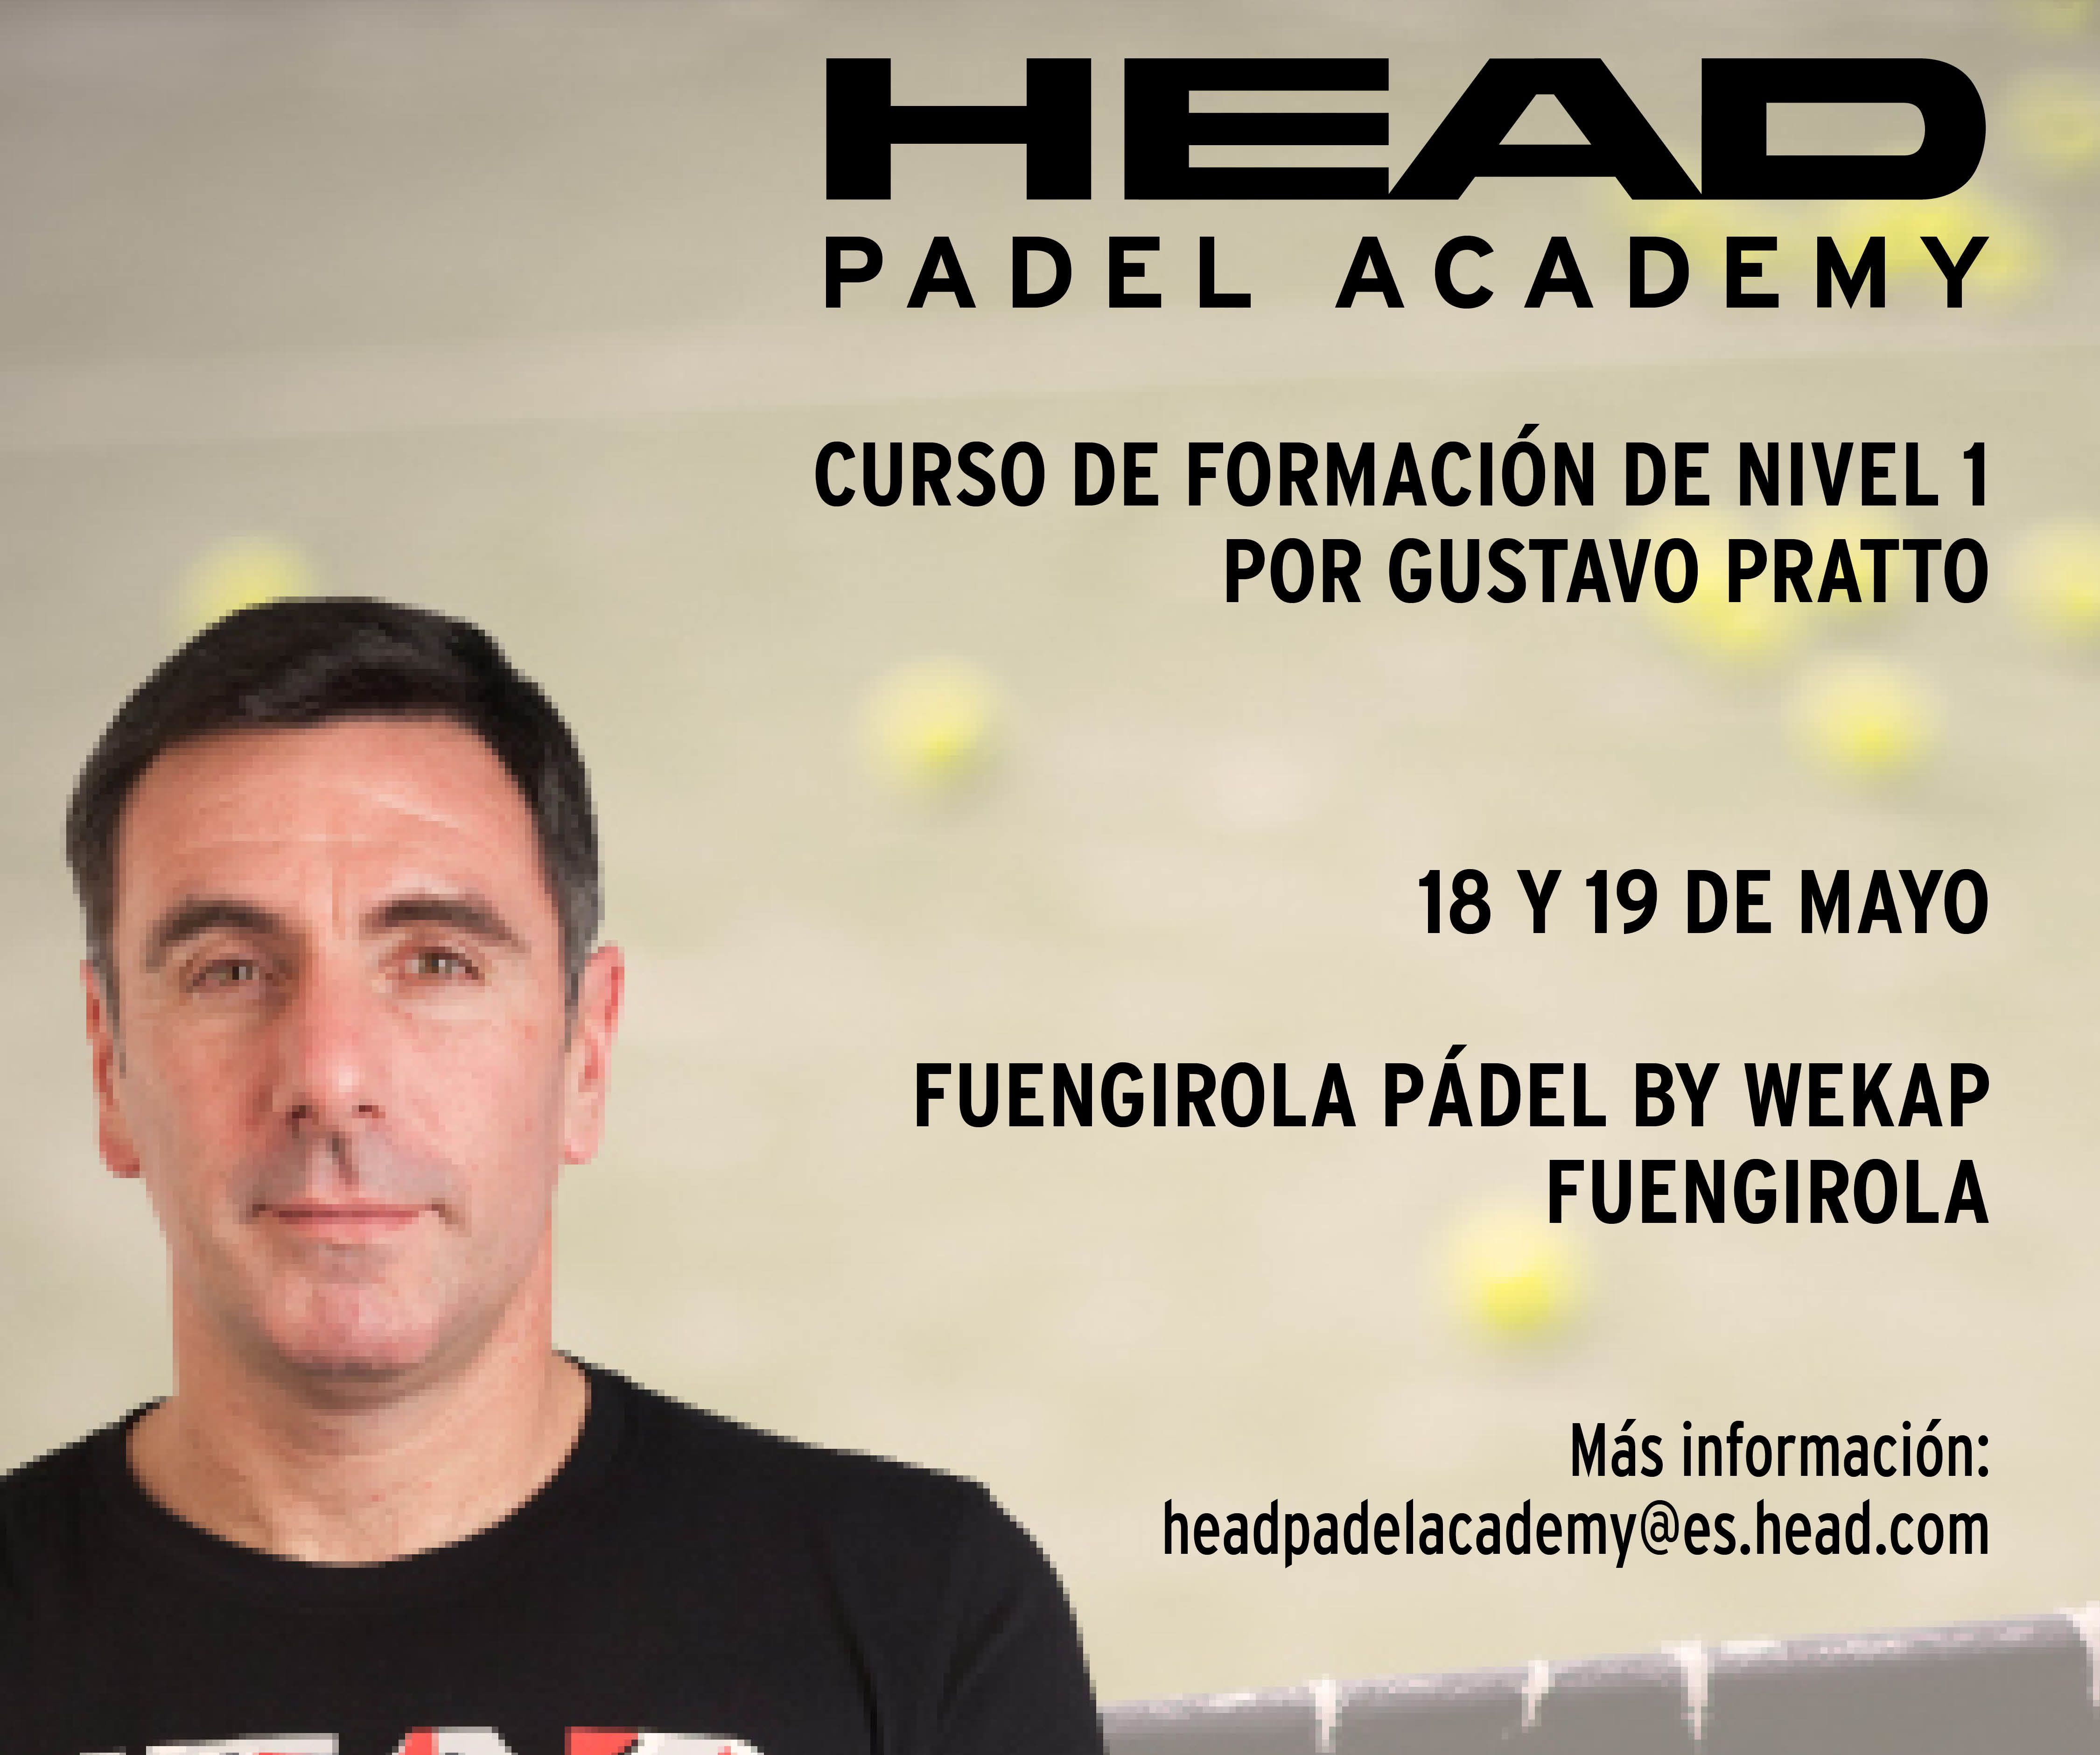 La Head Padel Academy llega a Fuengirola